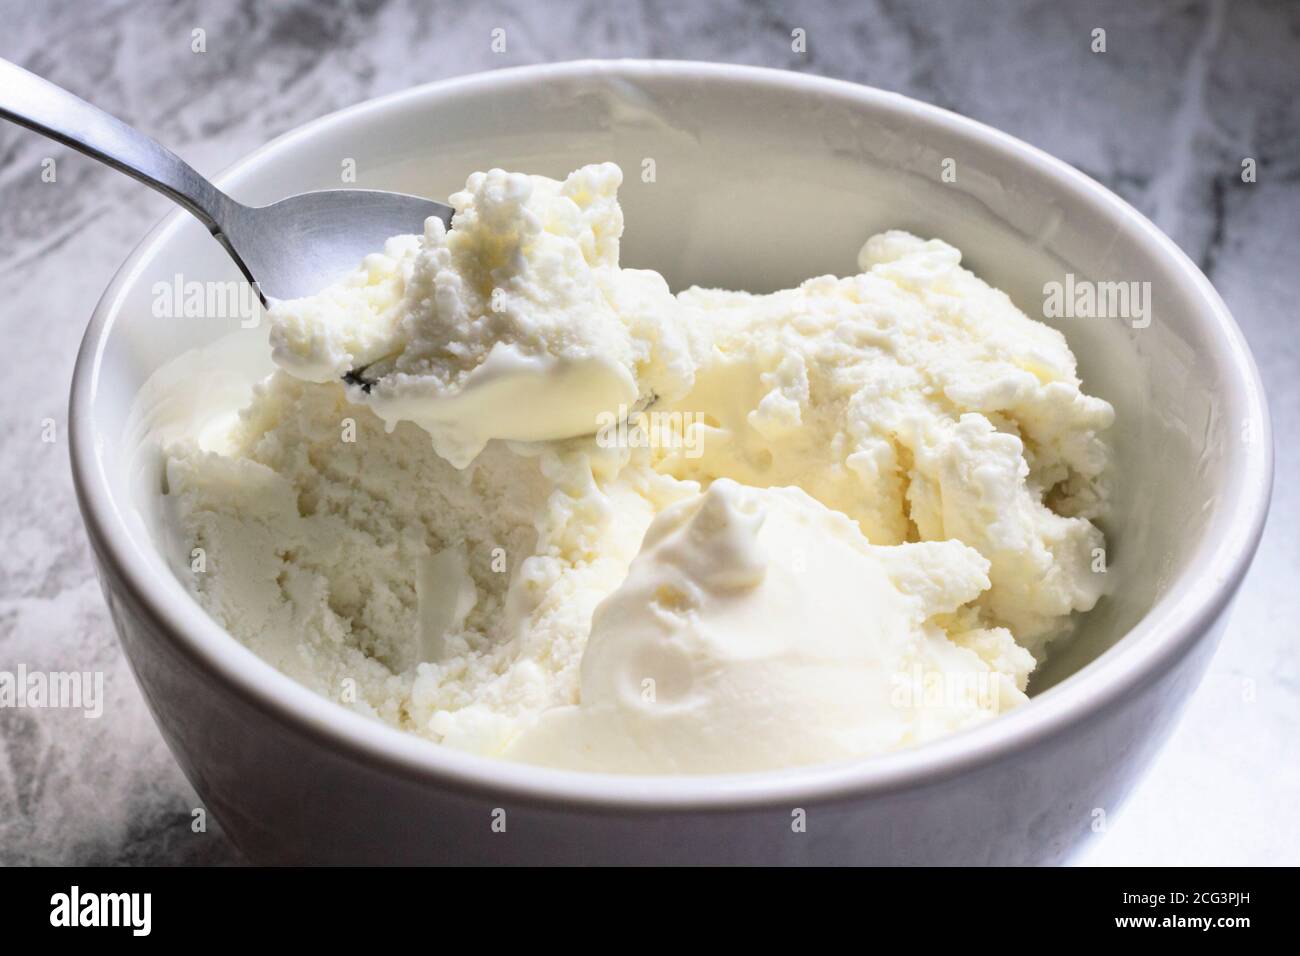 Cuillère de glace à la vanille. Foyer de la Sélétive... Banque D'Images